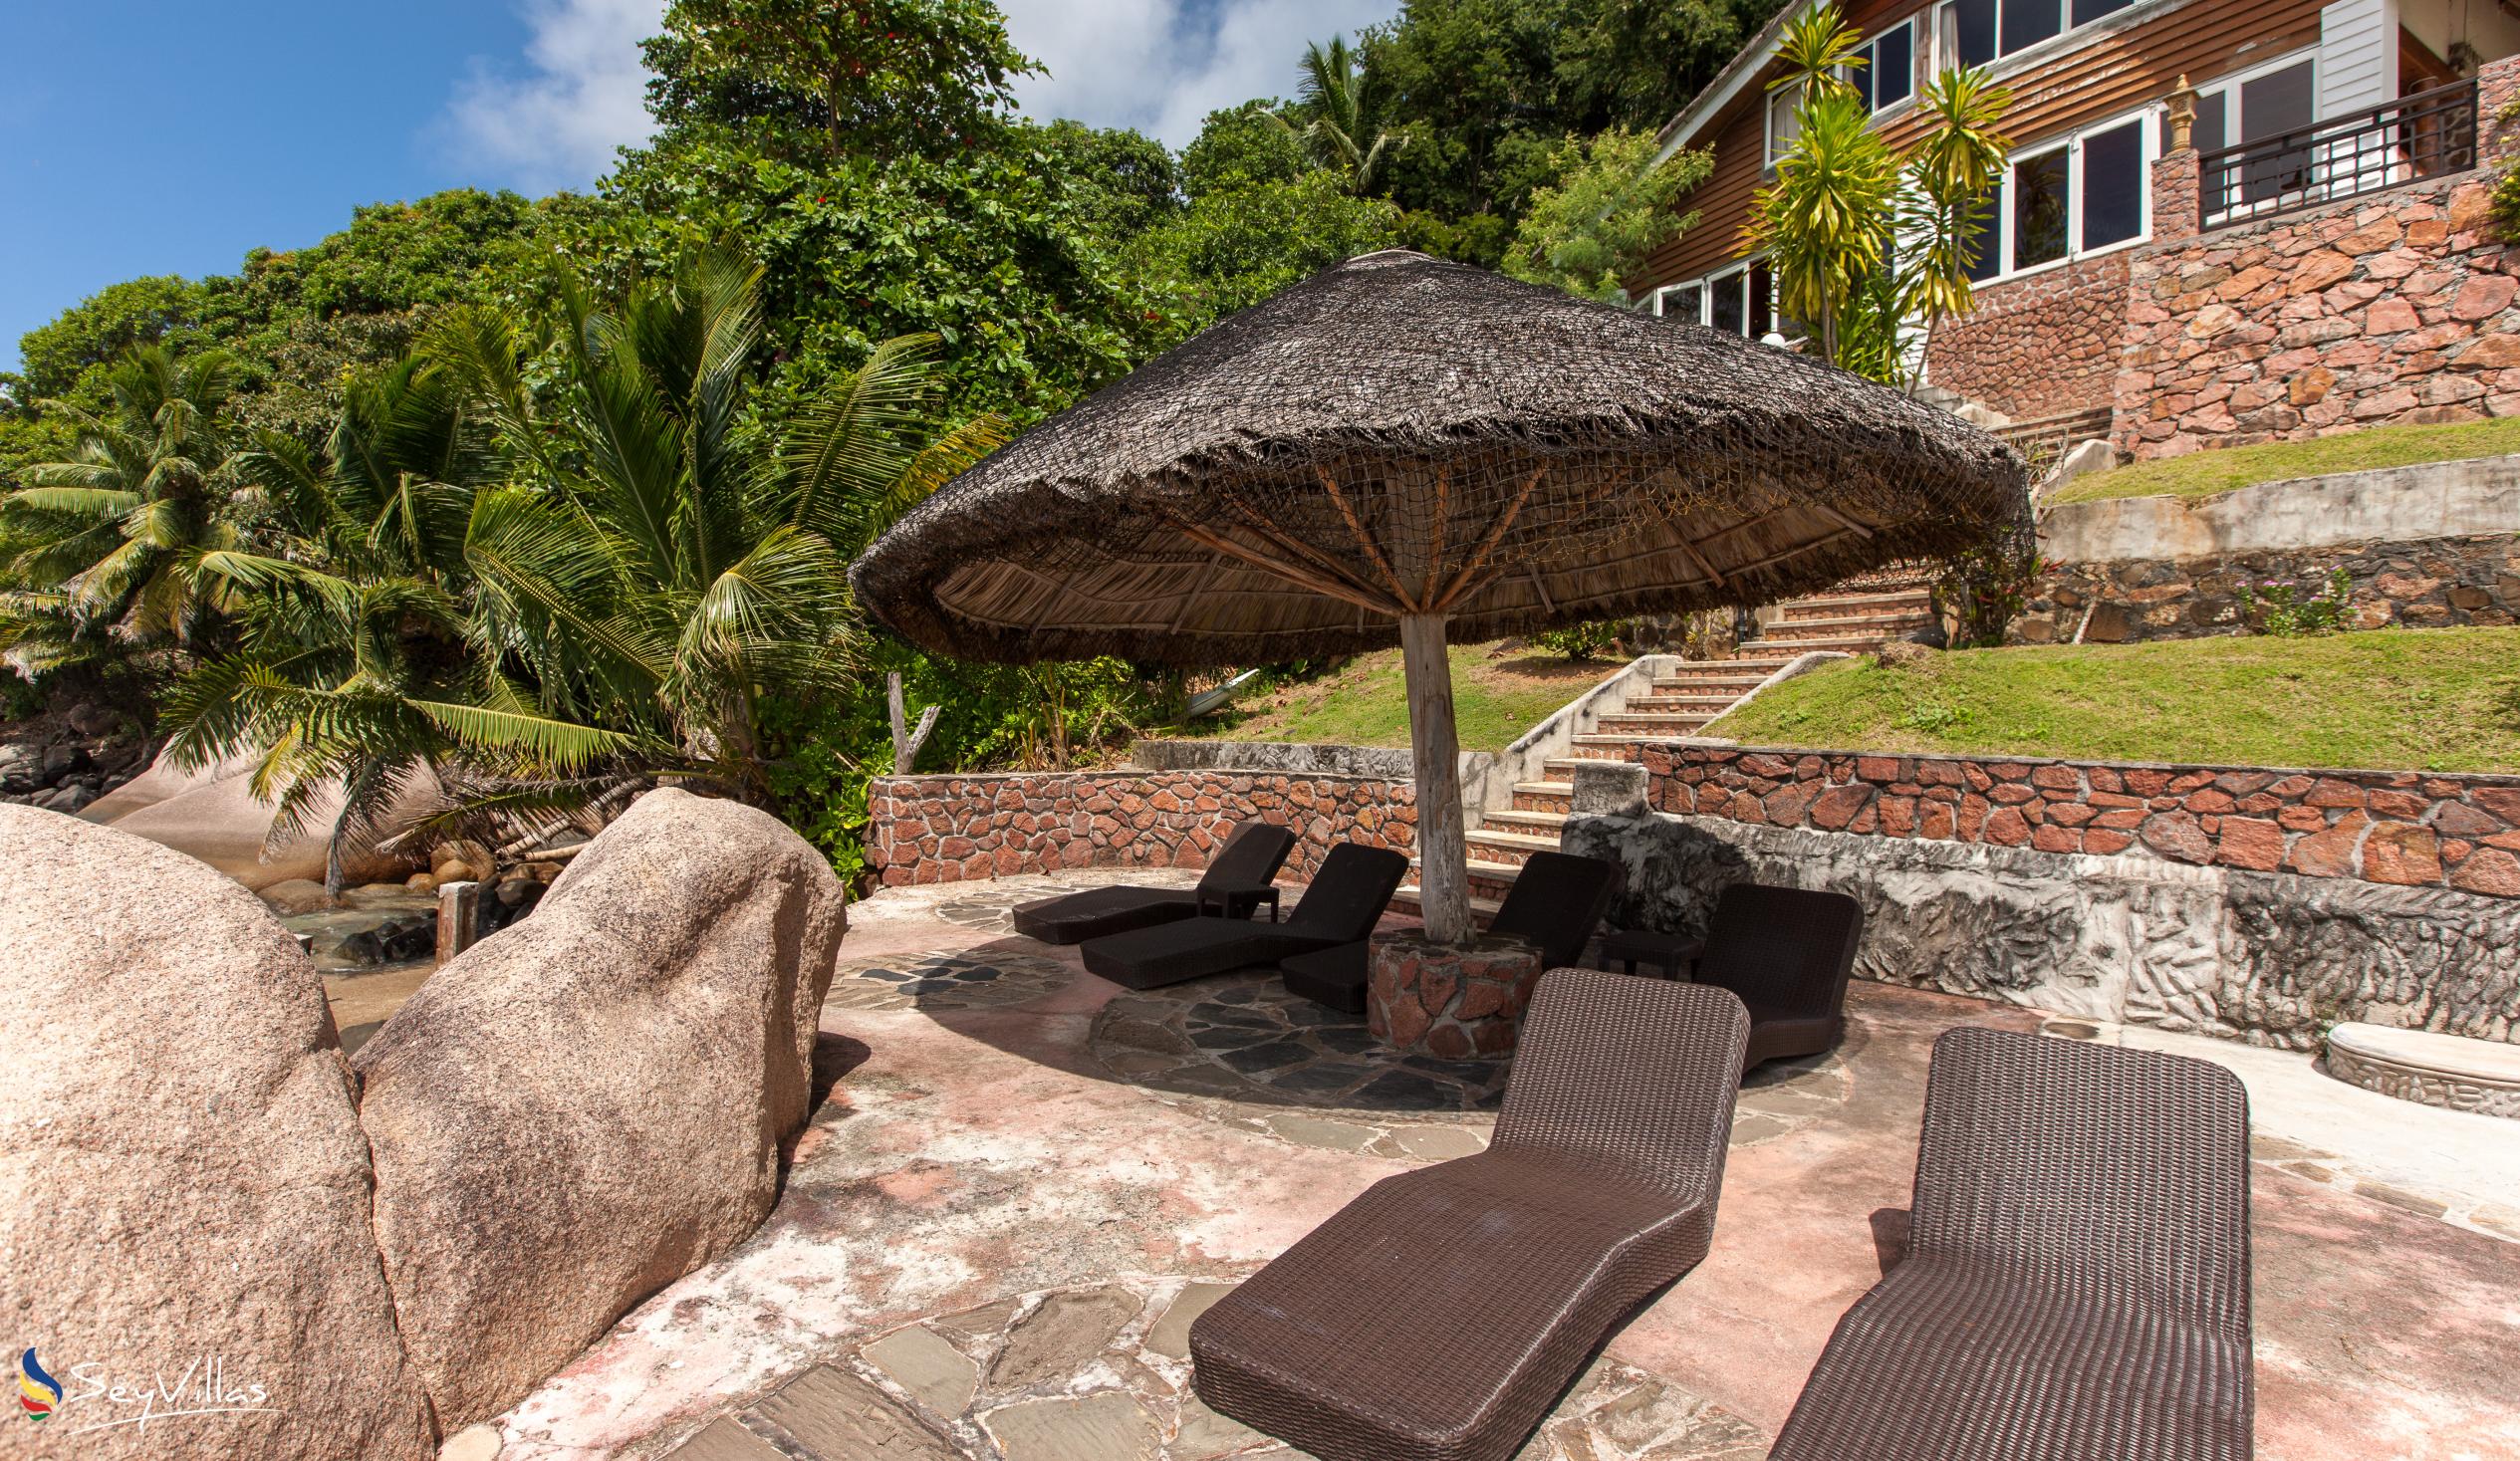 Foto 17: Colibri Guesthouse - Aussenbereich - Praslin (Seychellen)